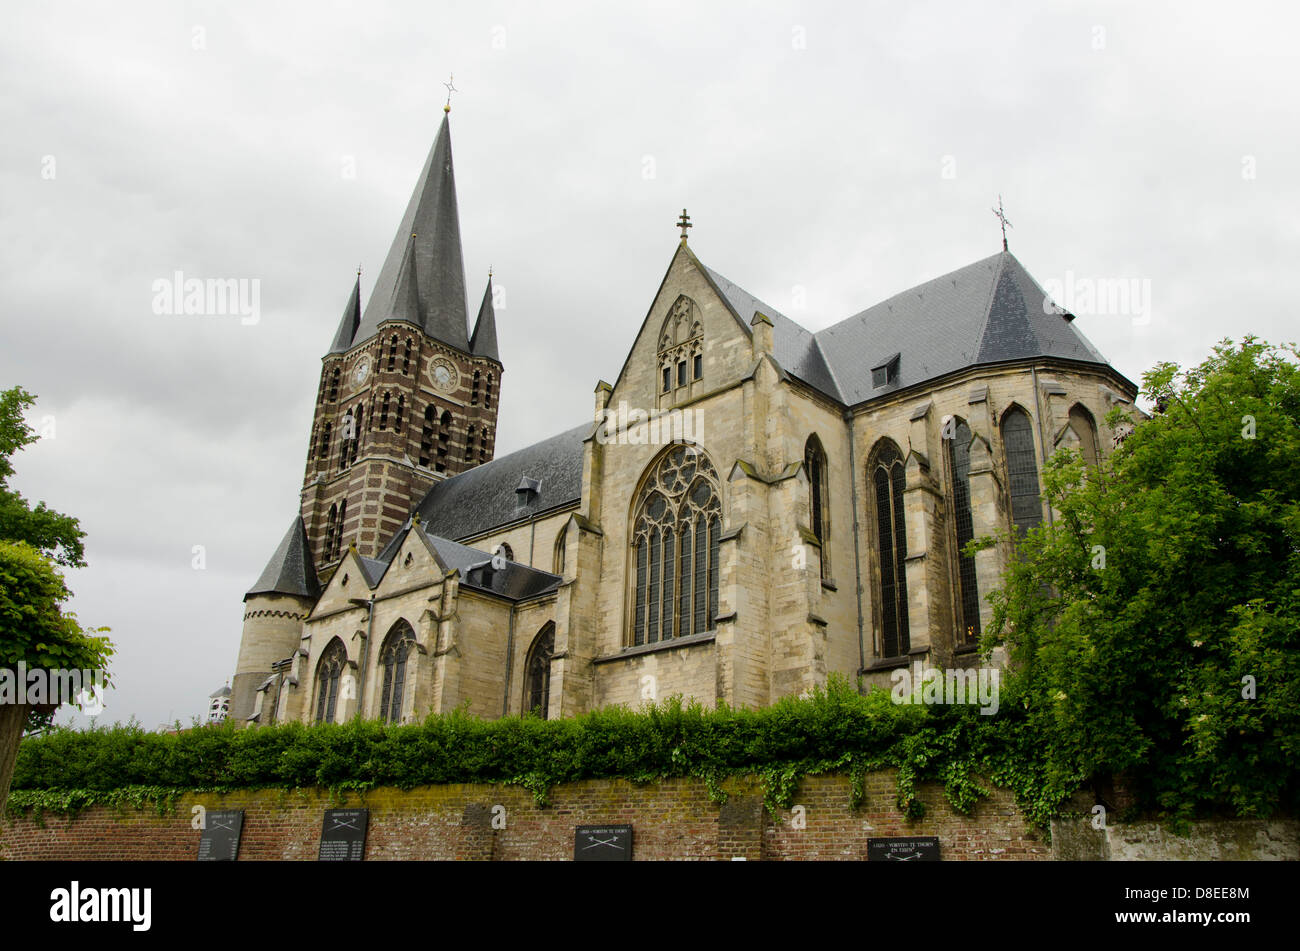 Die imperiale Abtei in der mittelalterlichen Stadt Thorn, in der niederländischen Provinz Limburg. Niederlande. Stockfoto